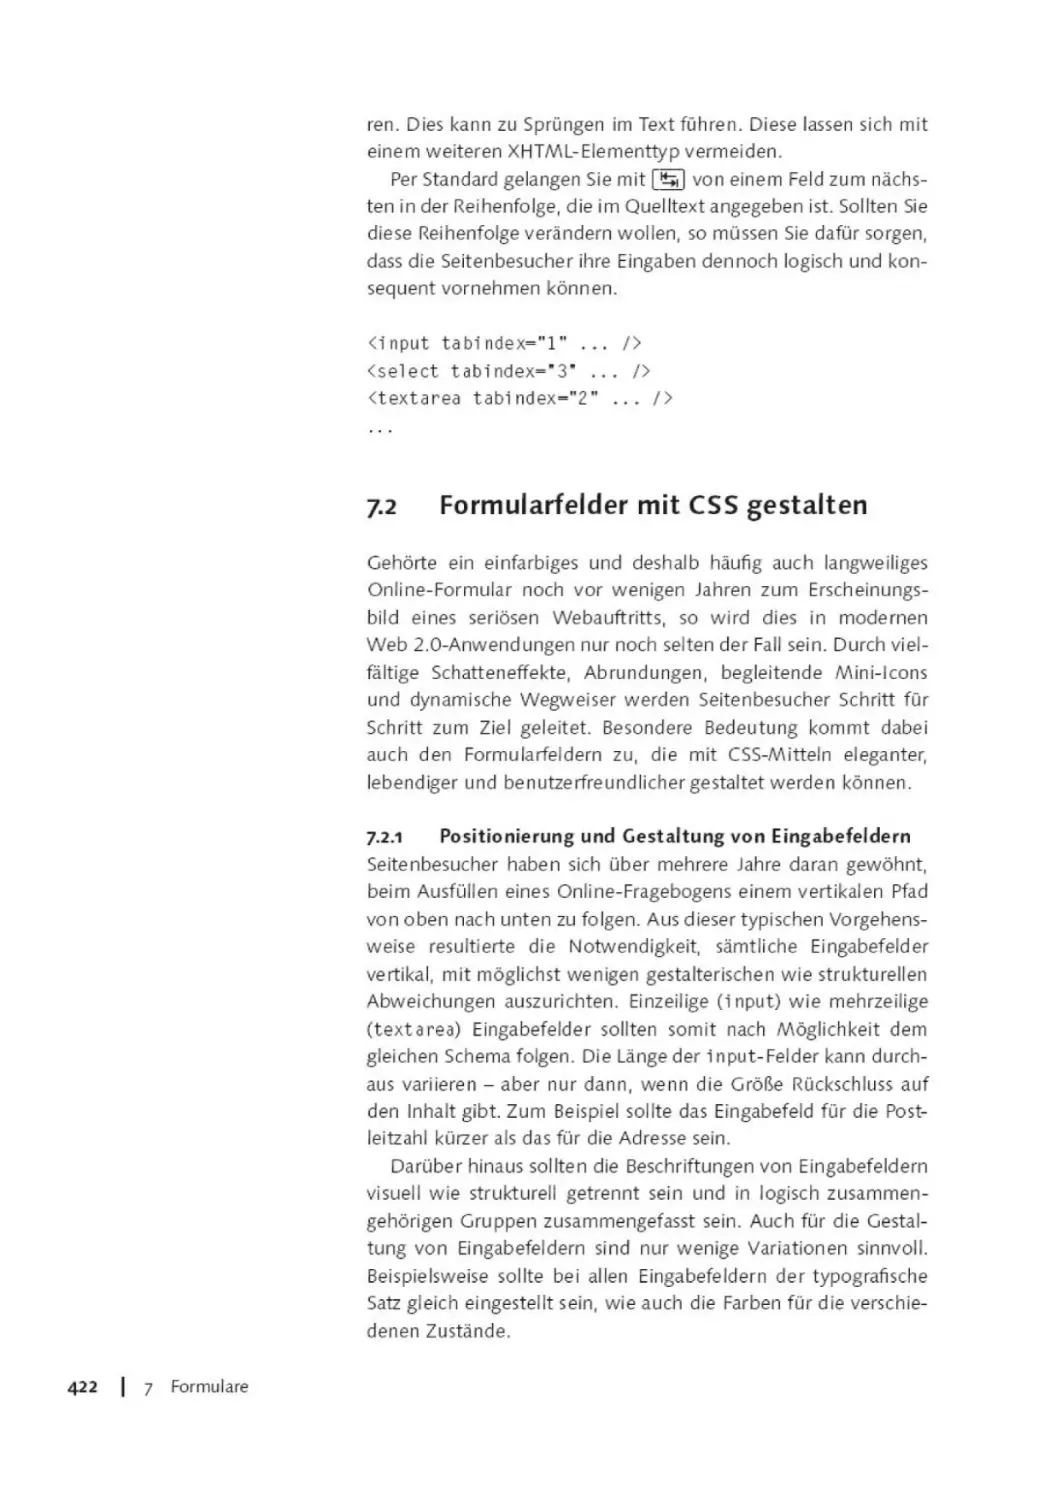 7.2        Formularfeider mit CSS gestalten
7.2.1        Positionierung und Gestaltung von Eingabefeldern